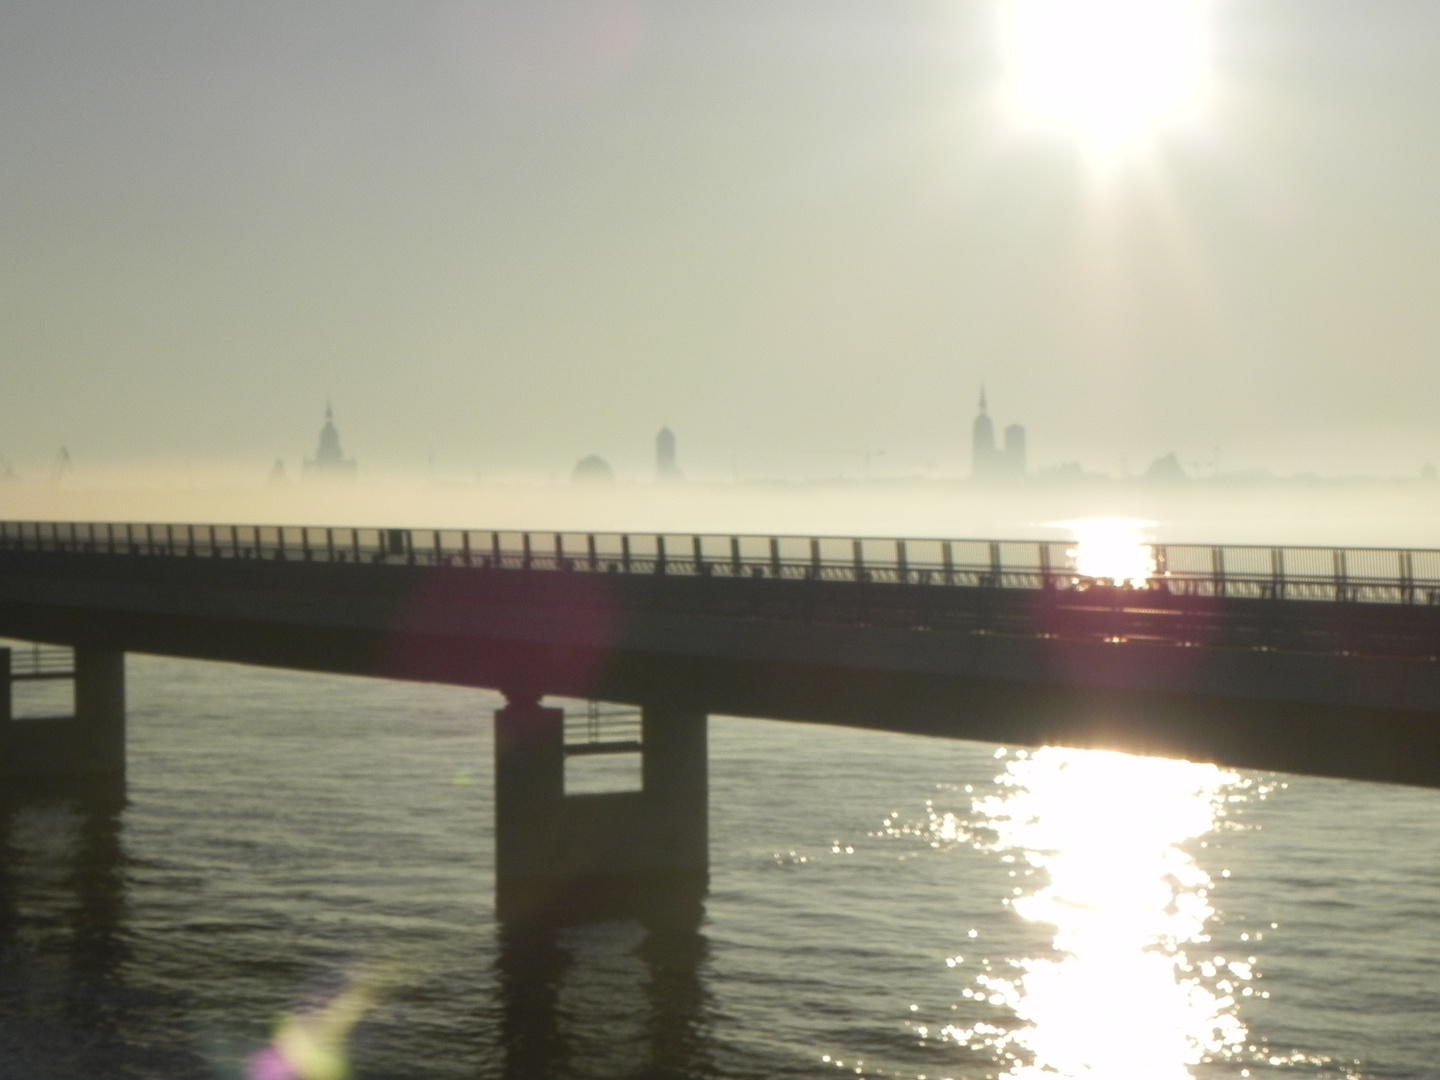 Die Sillhouette Stralsnds von der Rügenbrücke bei traumhaftem Dunst und Nebelschwaden